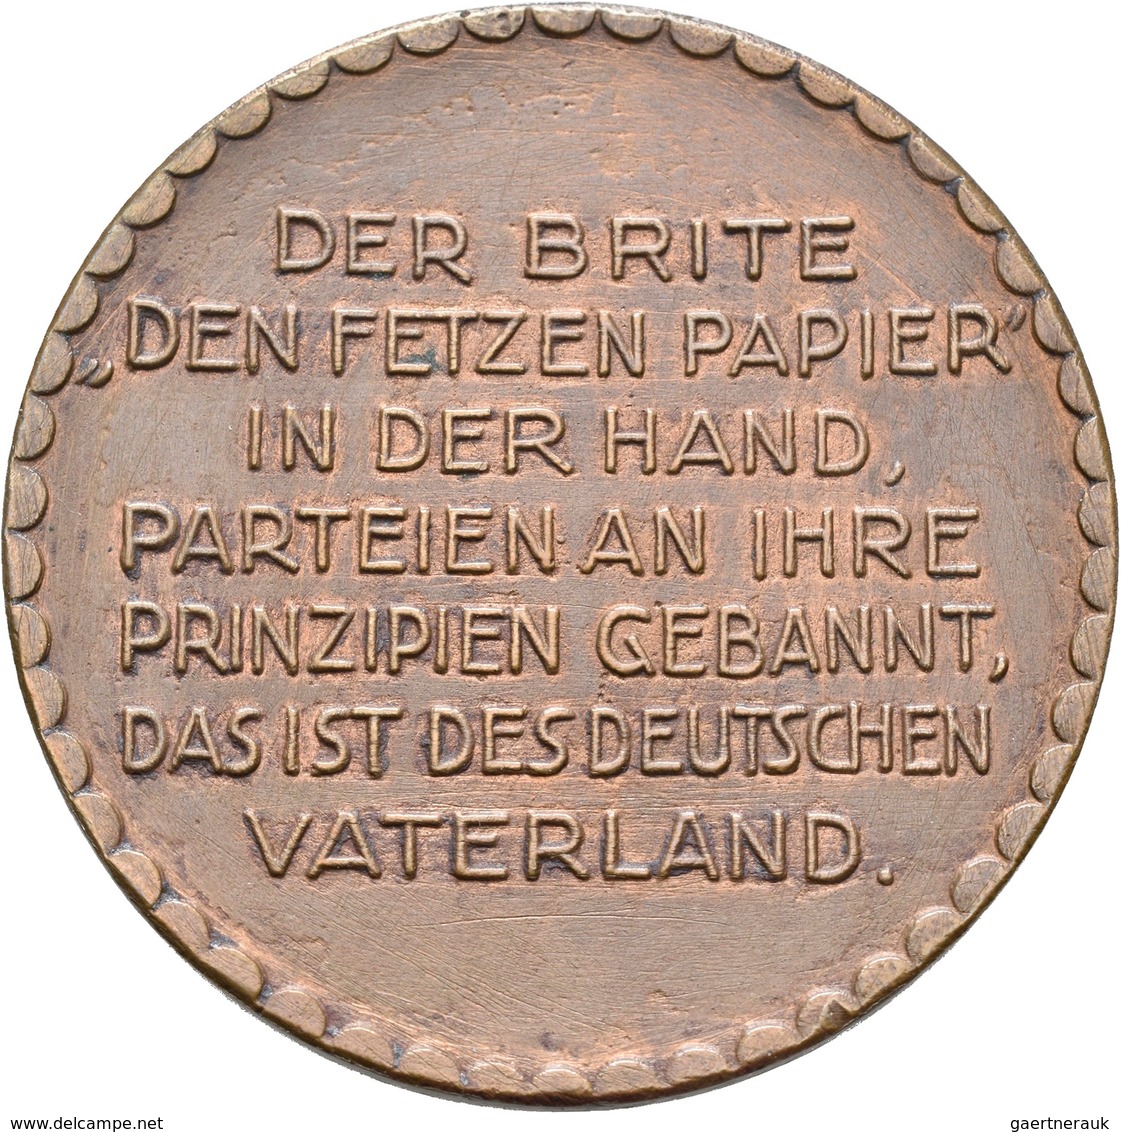 Medaillen Deutschland: Konvolut von 100 Medaillen in Silber und Bronze; der überwiegende Teil haben